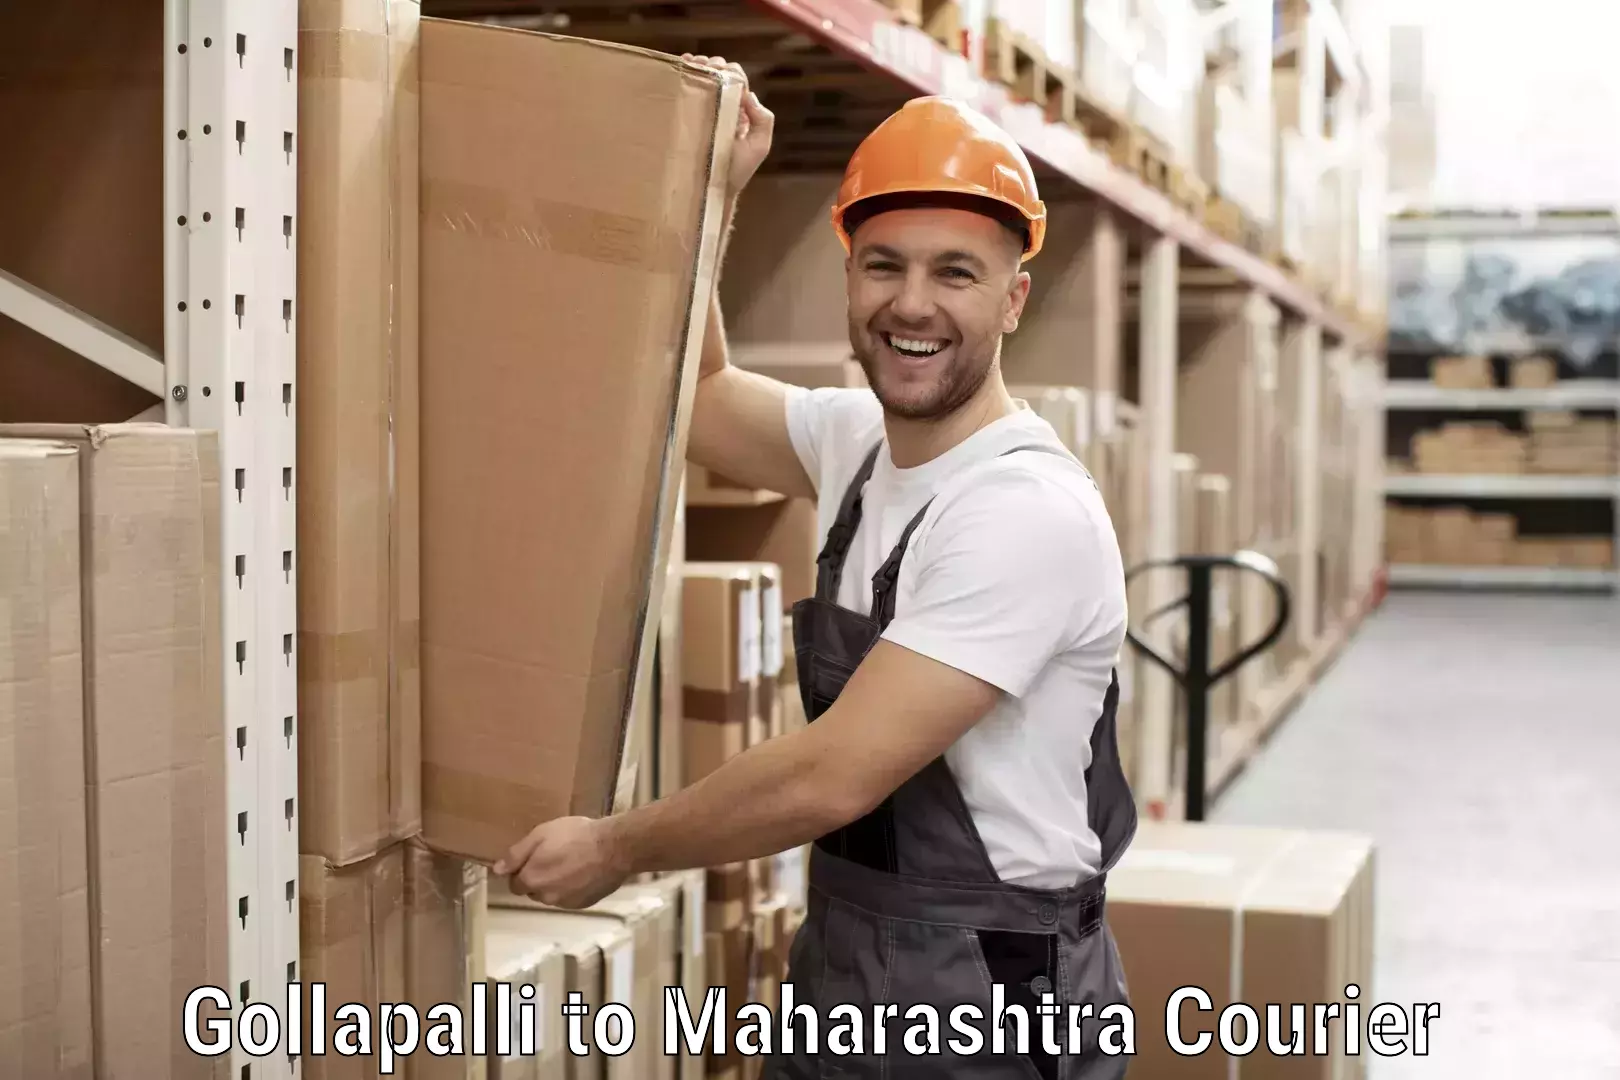 Fragile item shipping Gollapalli to Maharashtra